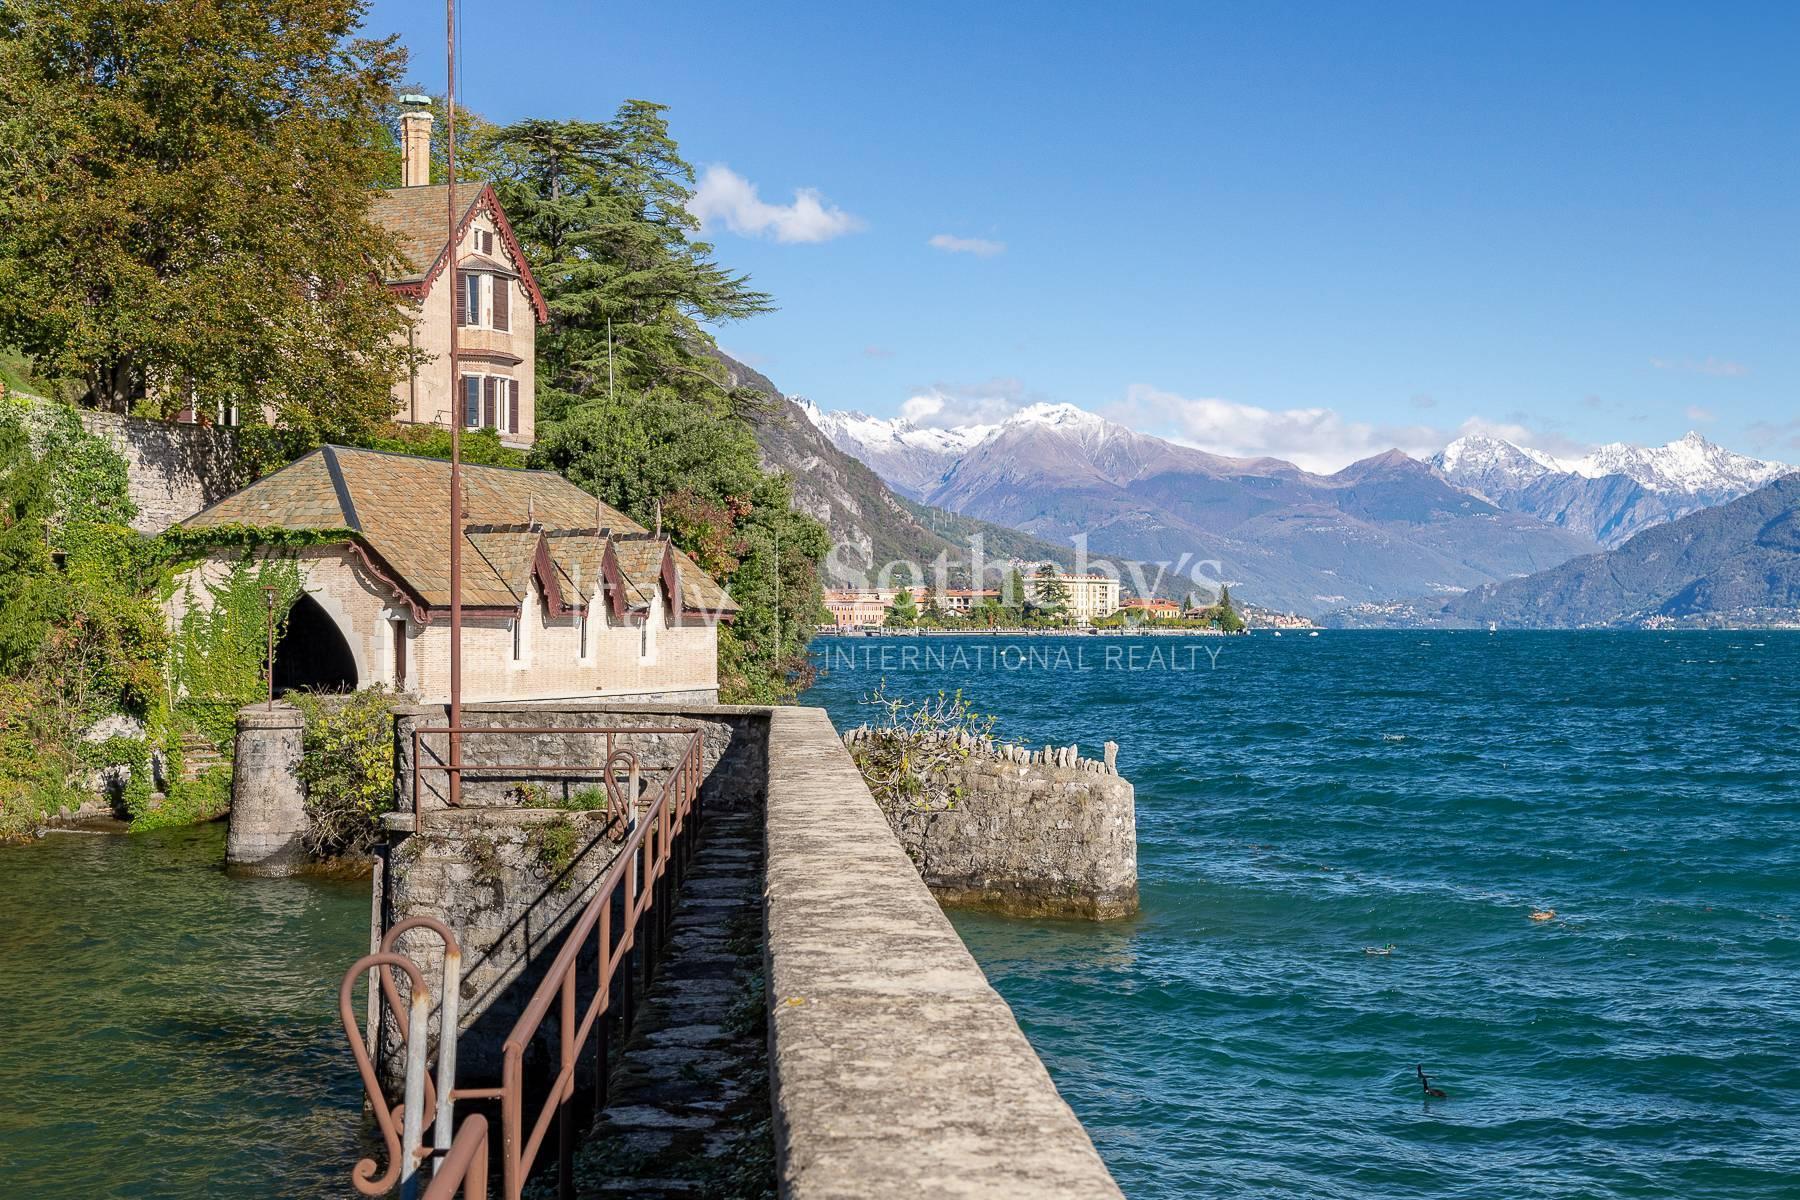 Magnifica villa in stile vittoriano sul lago di Como - 3